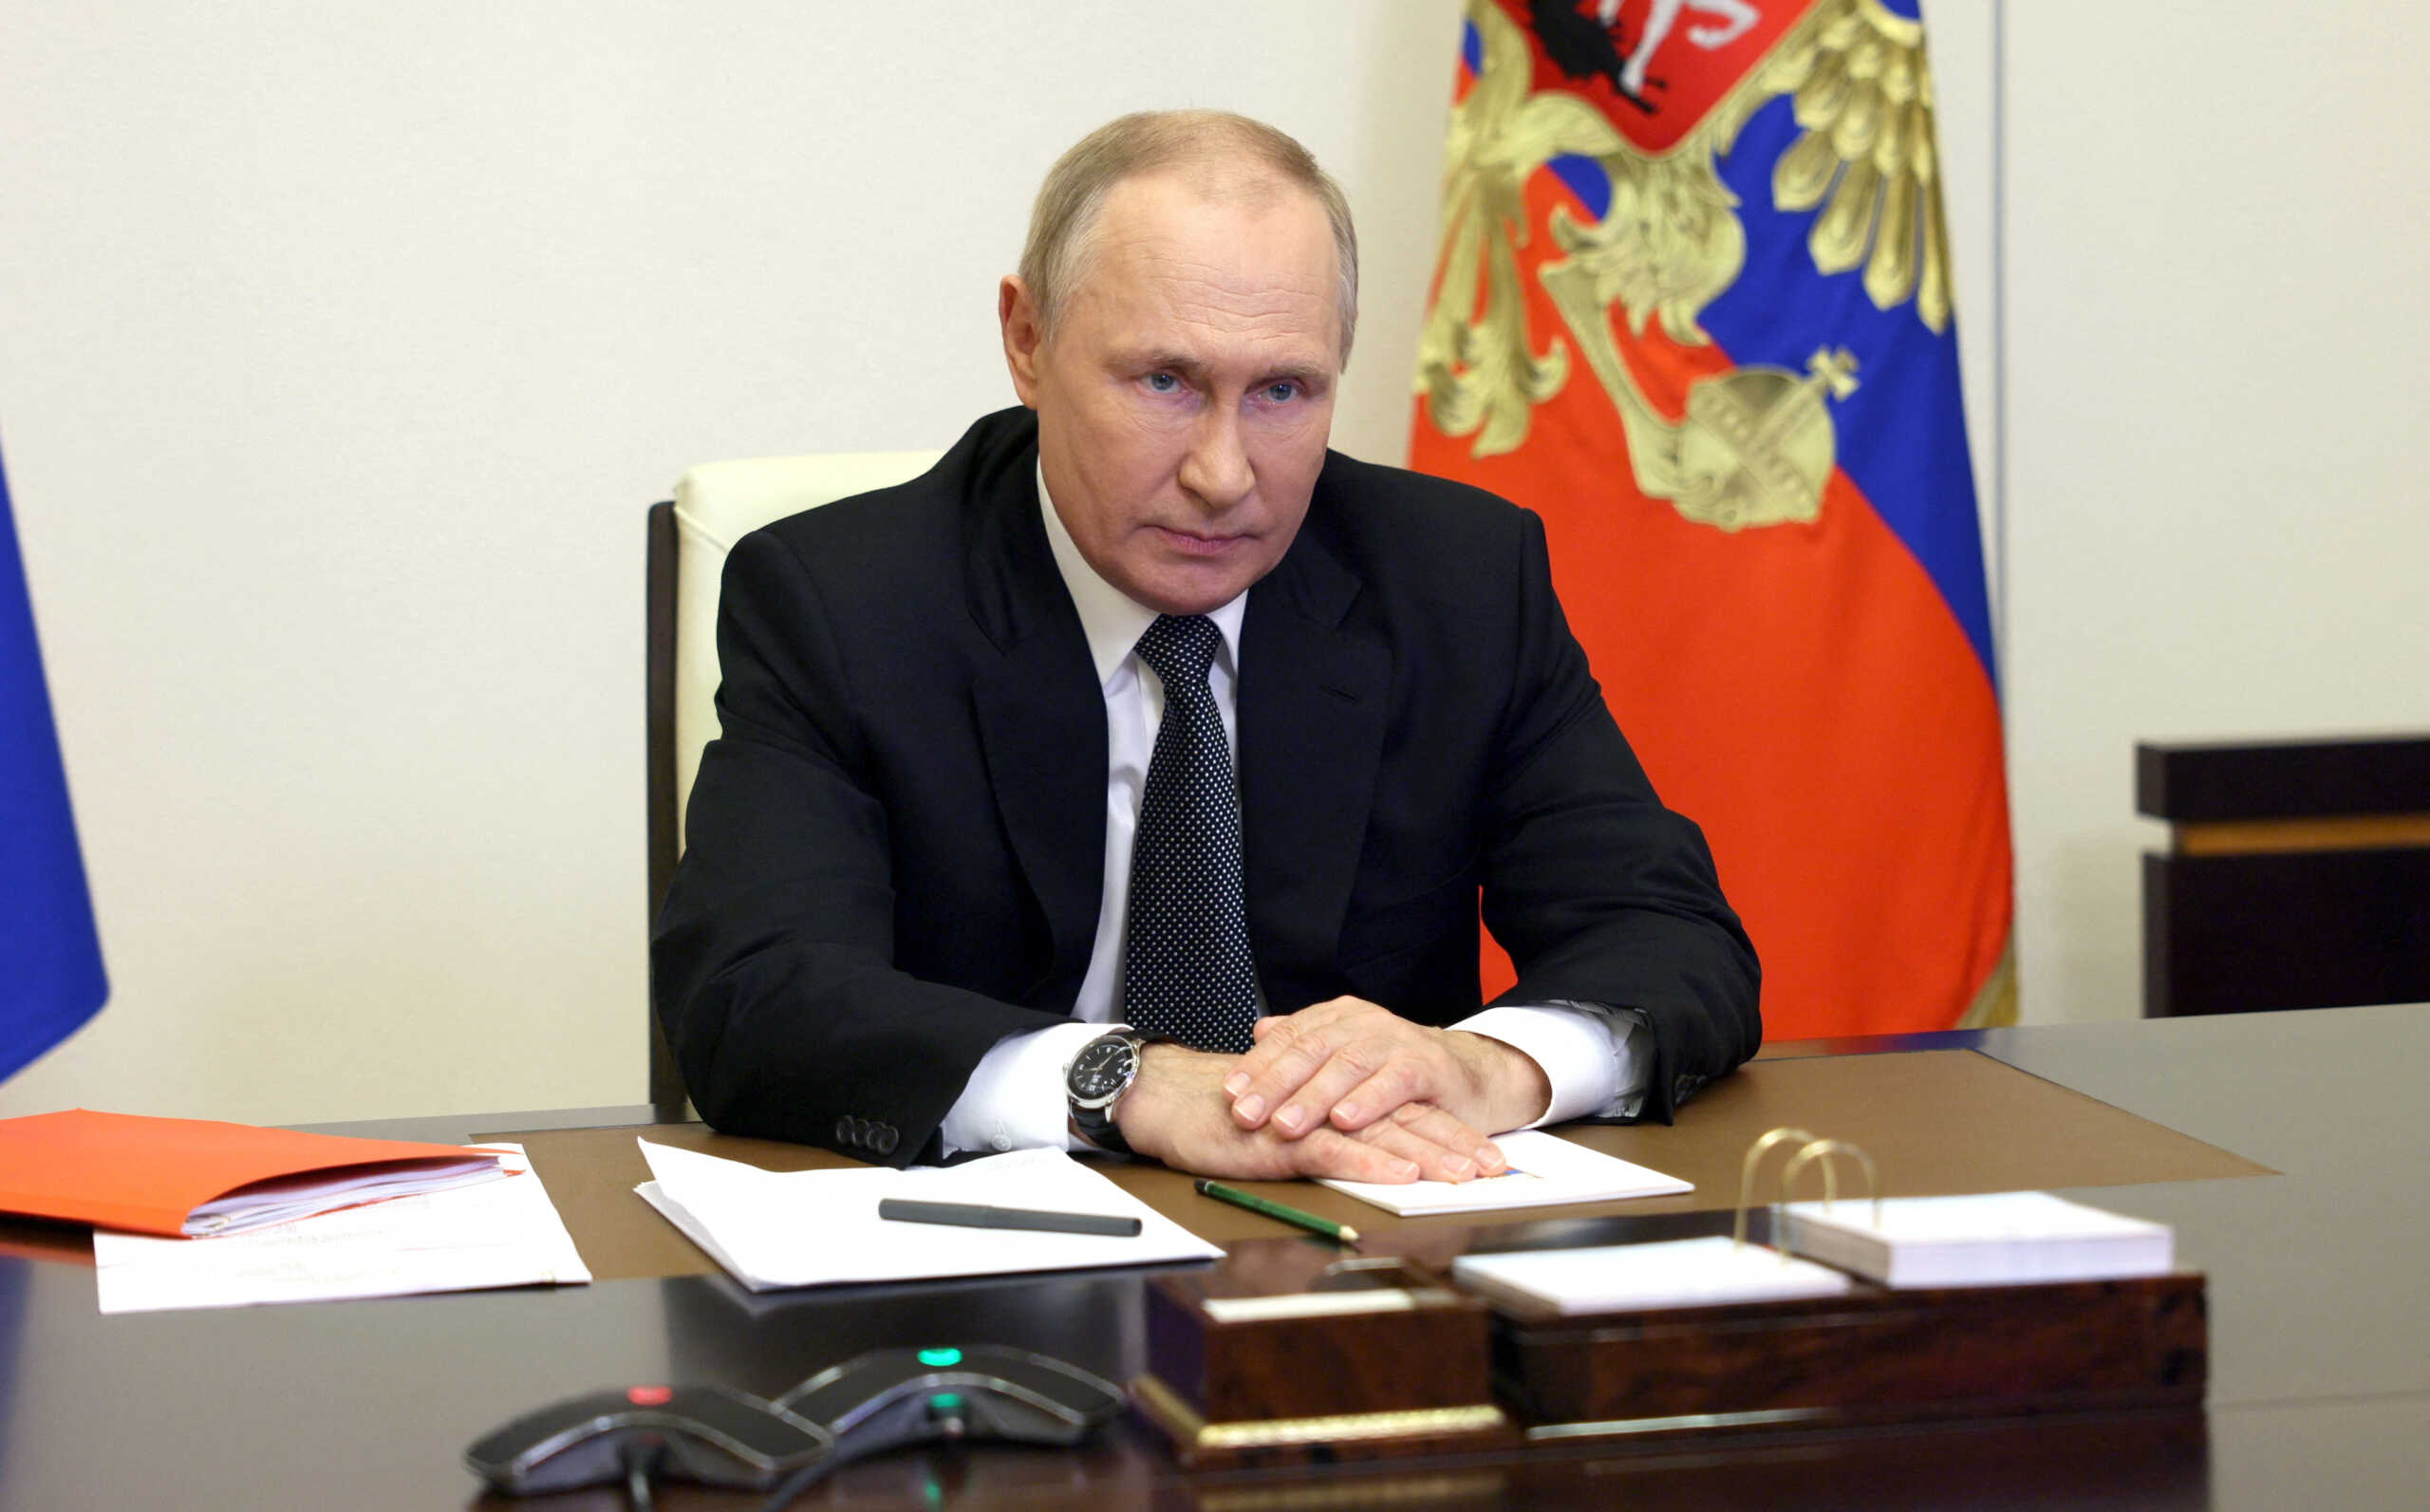 Πούτιν: Μεγάλος ο κίνδυνος παγκόσμιας σύγκρουσης είπε μετά από άσκηση με βαλλιστικούς πυραύλους και Κρουζ